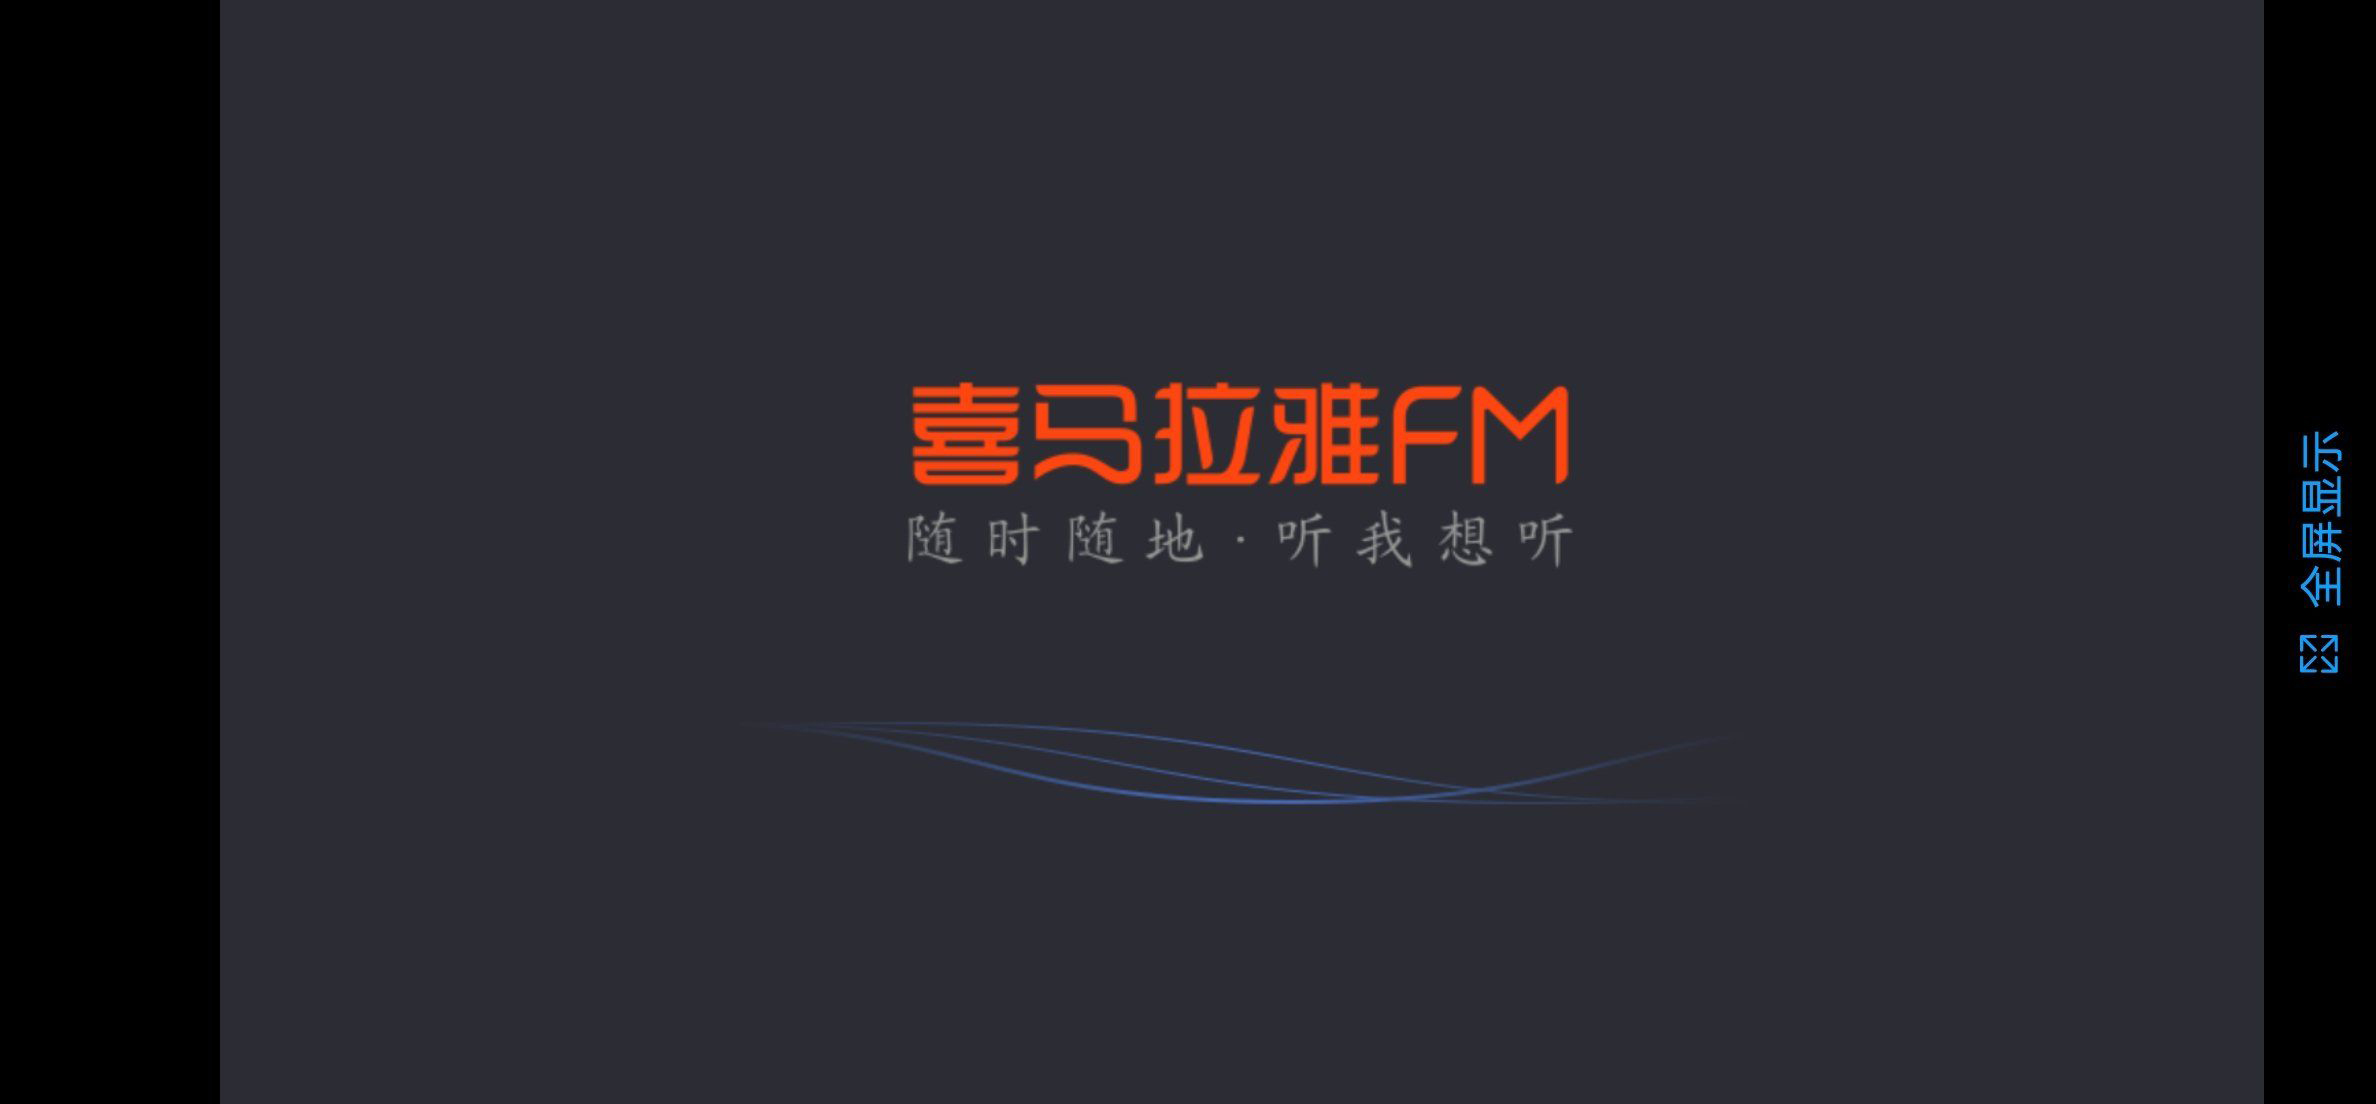 喜马拉雅fm机车版V1.7.1 资源免费【安卓】